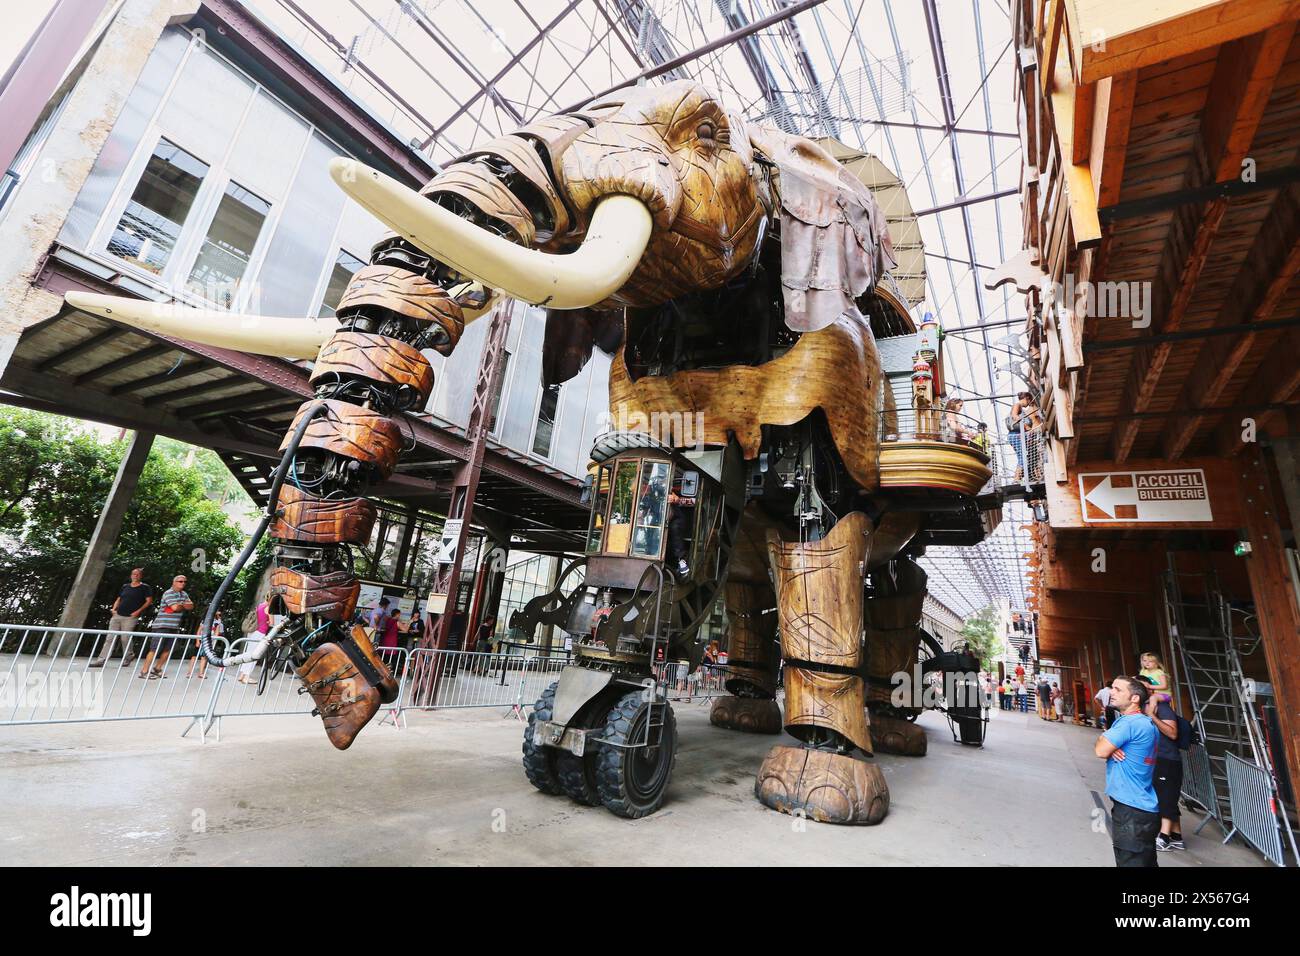 Grand Éléphant, Les Machines de l´Île, Nantes, Pays de la Loire, France Stock Photo